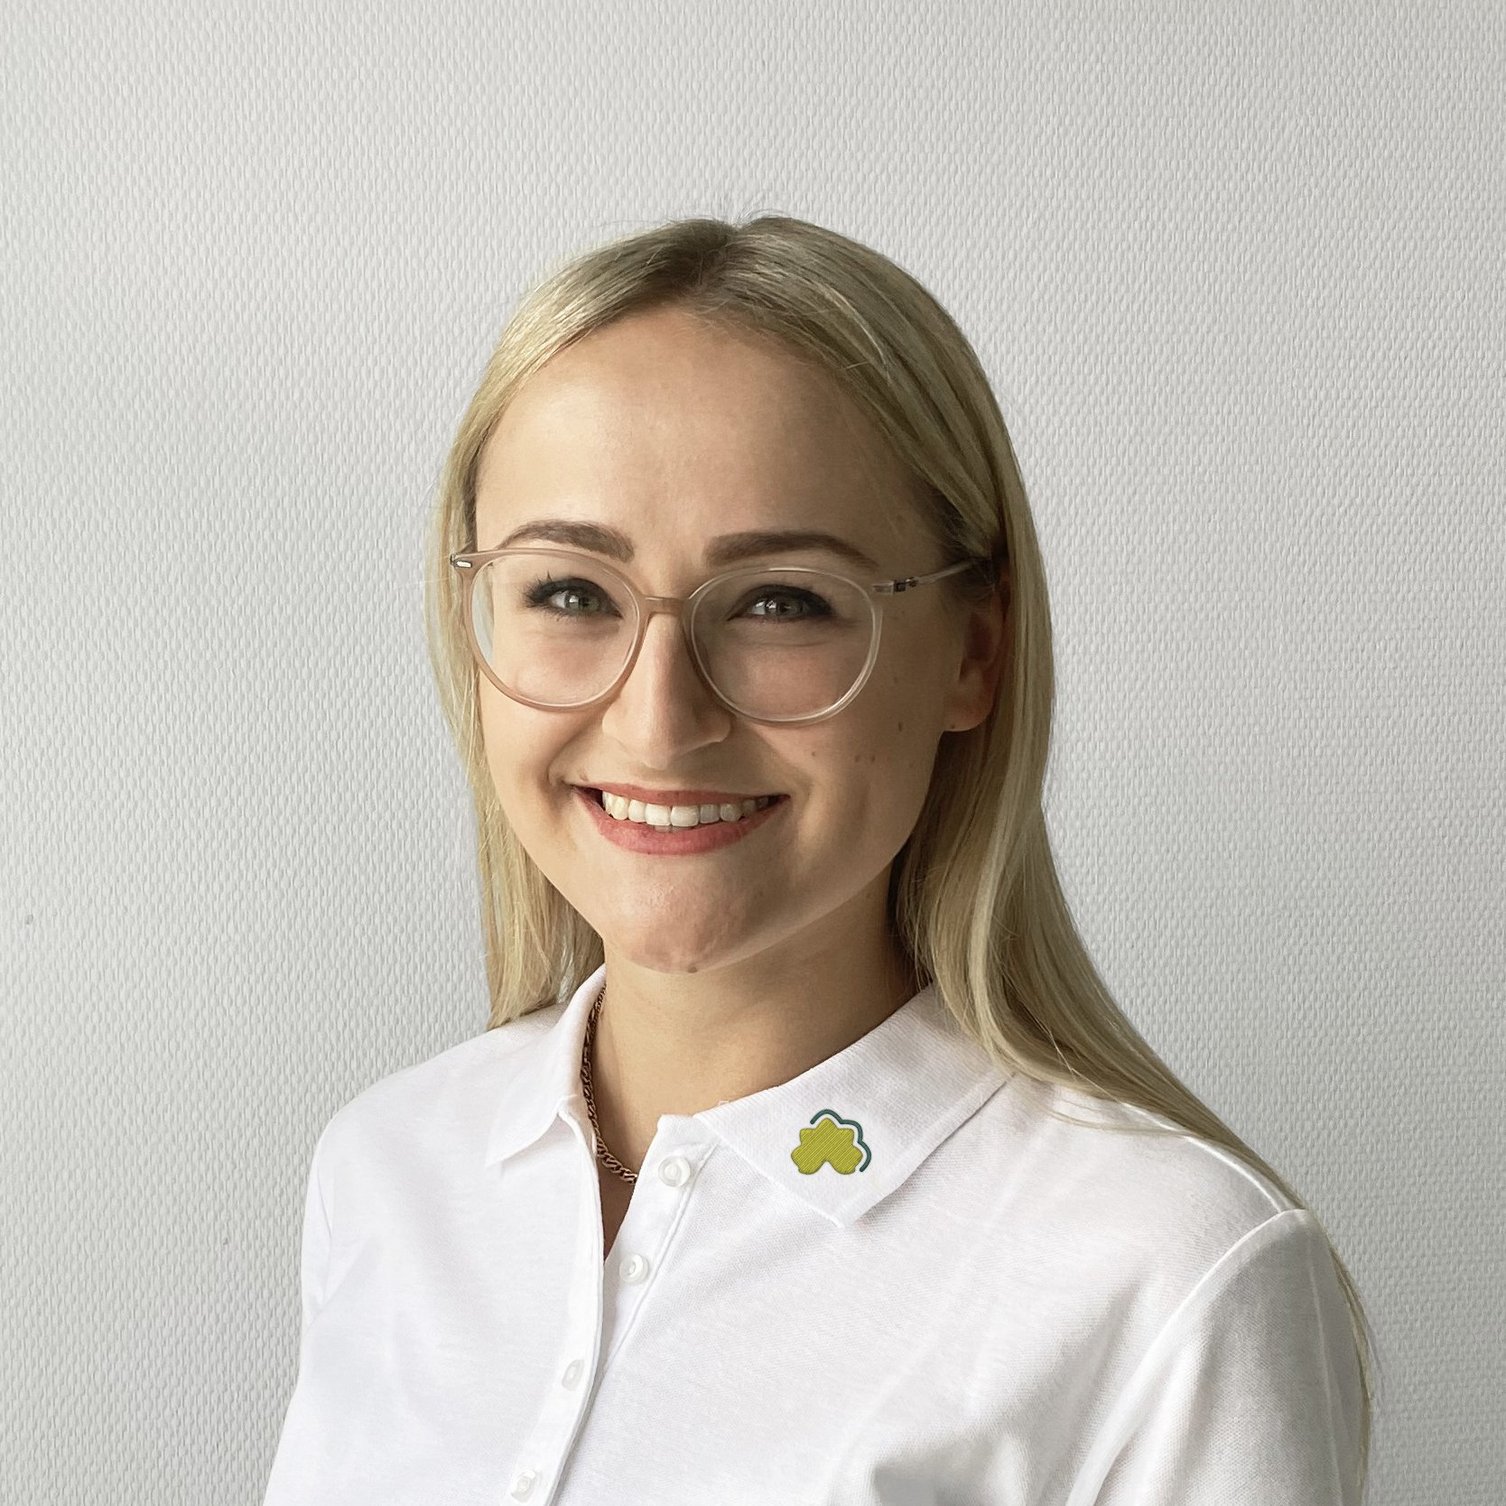 Portraitfoto von Anna-Lena Muesel, Mitarbeiterin Personal- Organisationsentwikcklung